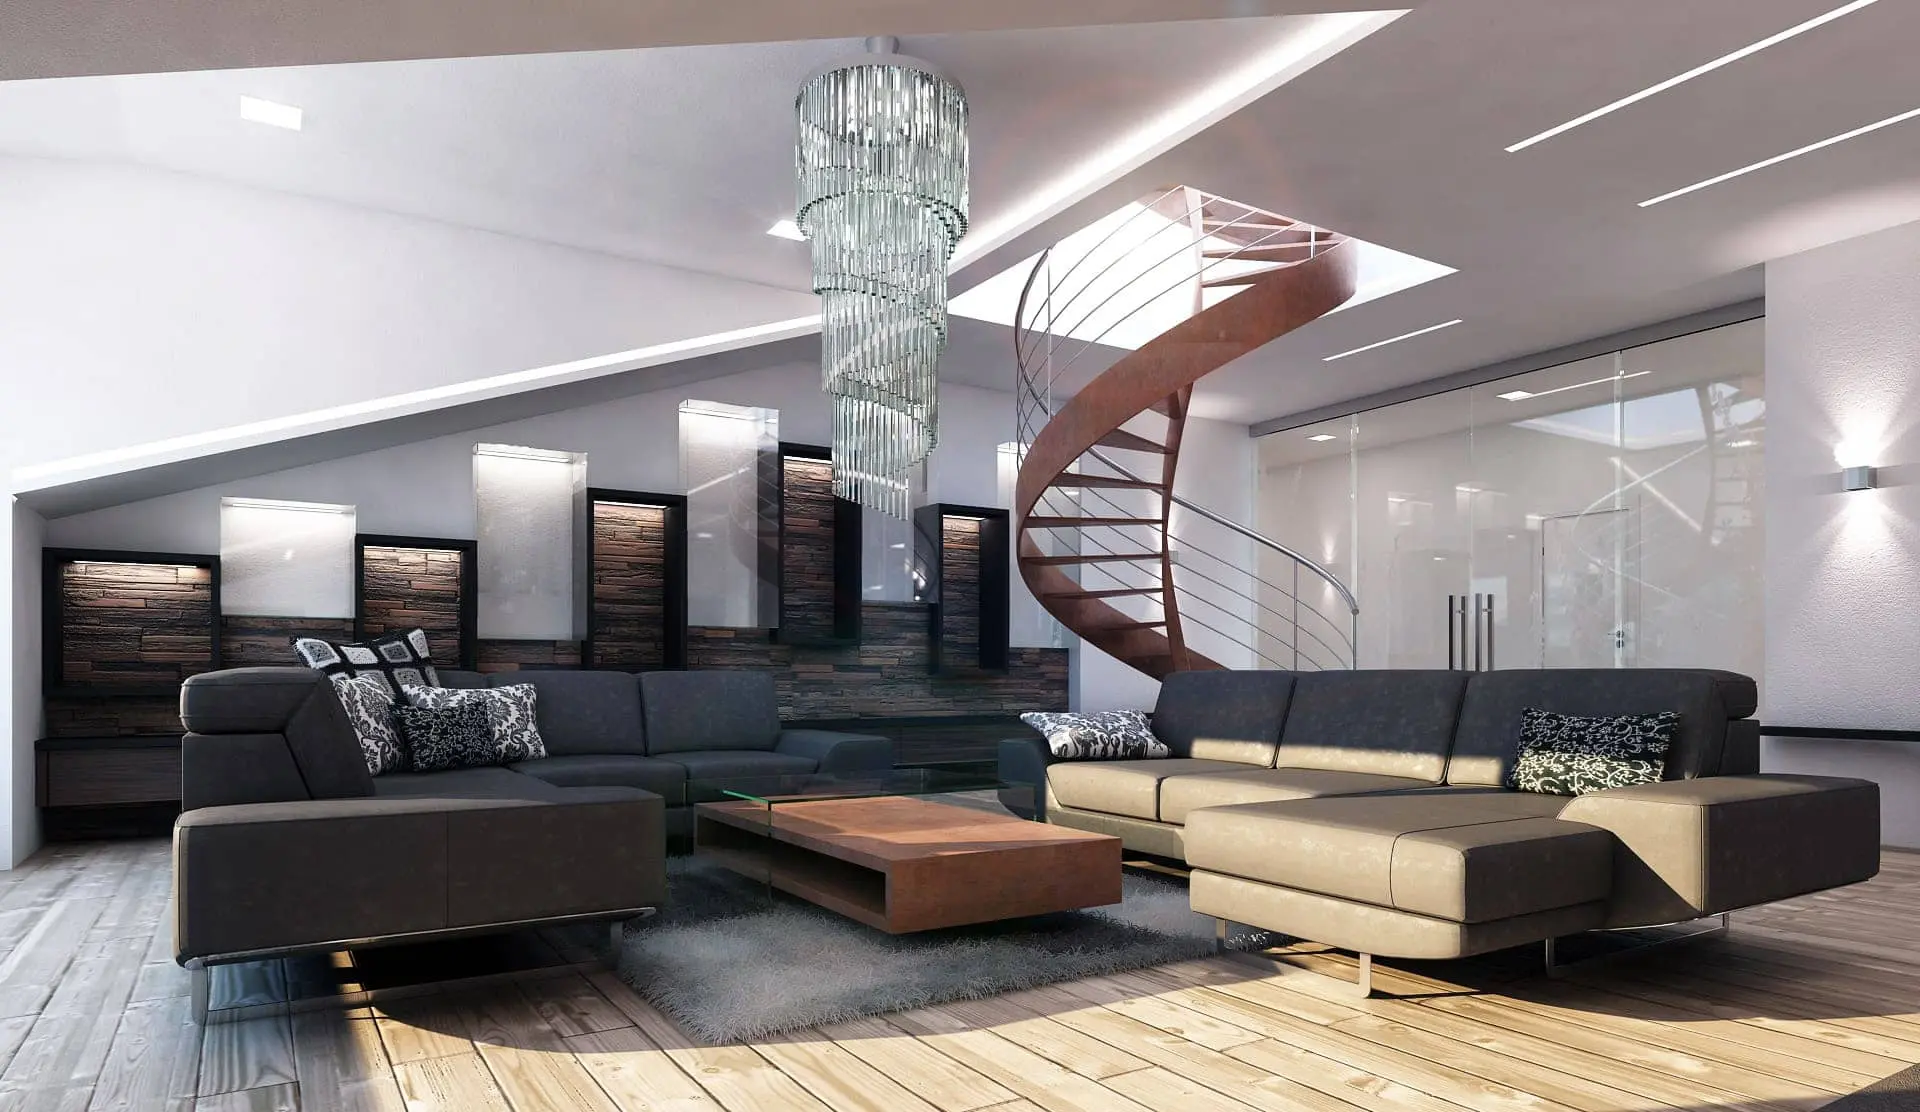 Návrh luxusního podkrovního bytu ve Špindlerově Mlýně